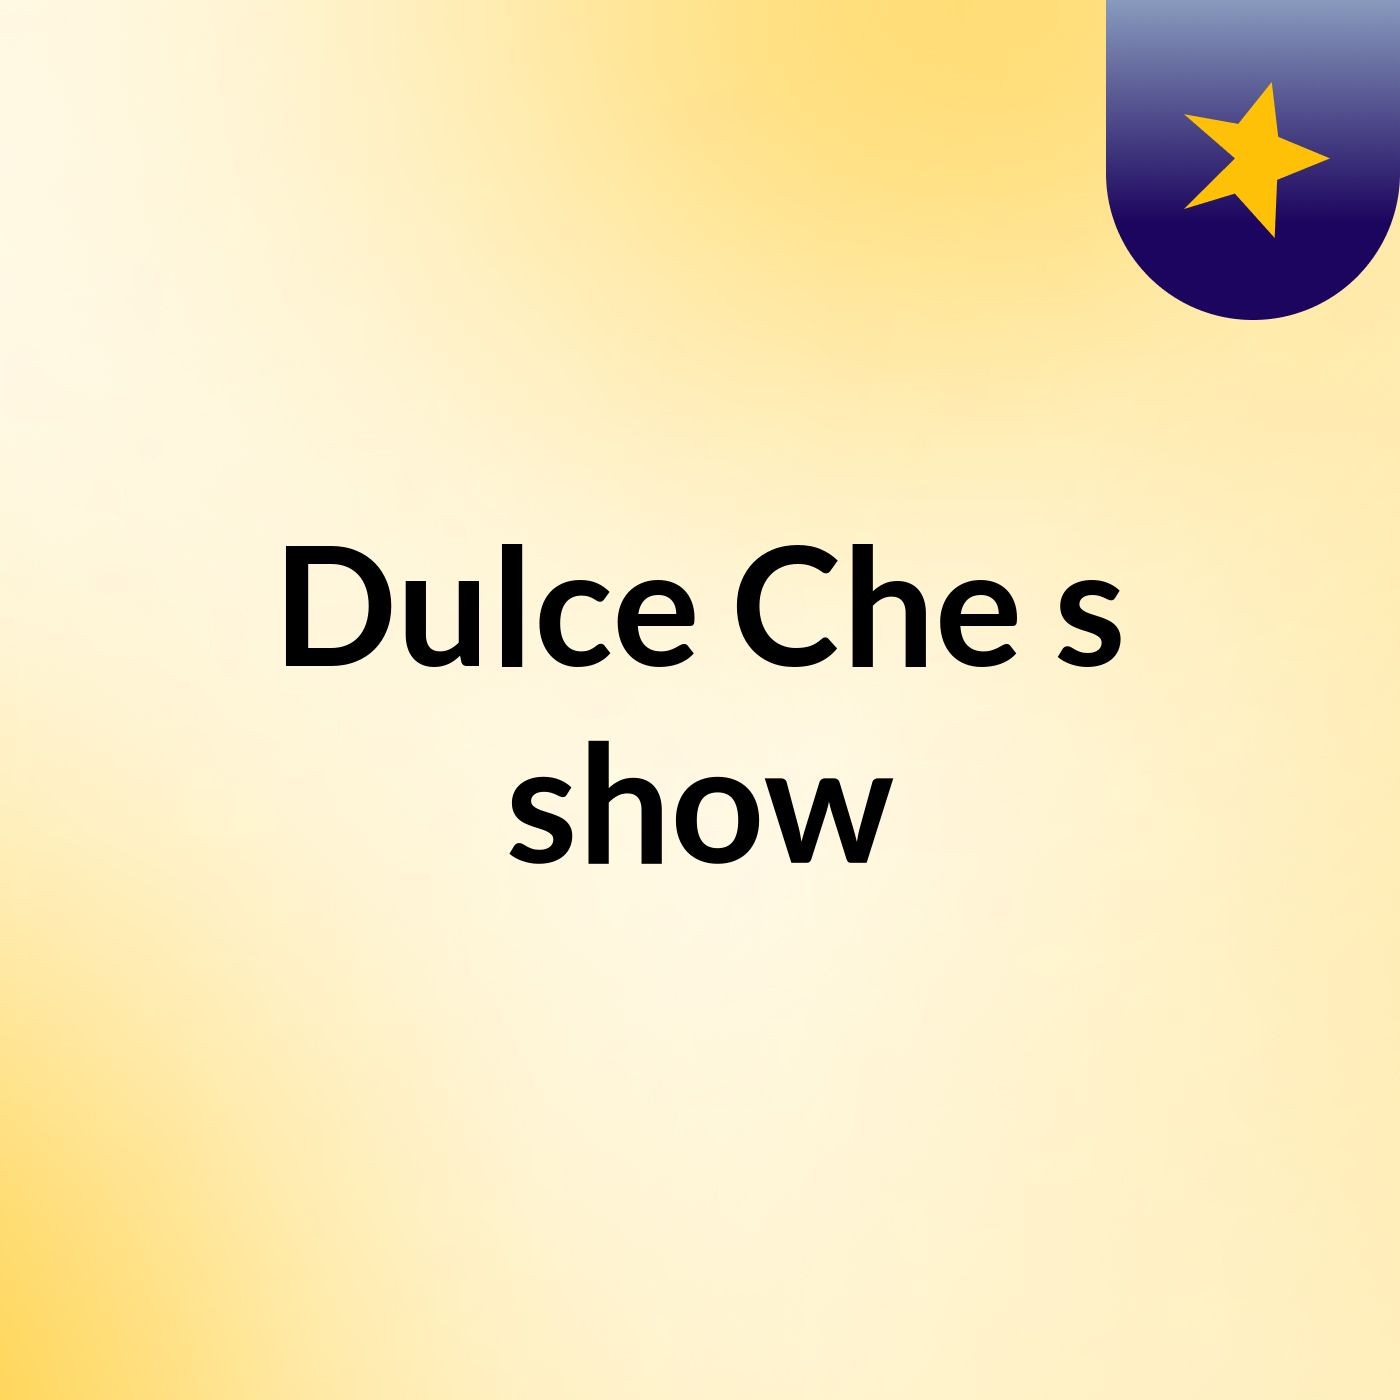 Dulce Che's show